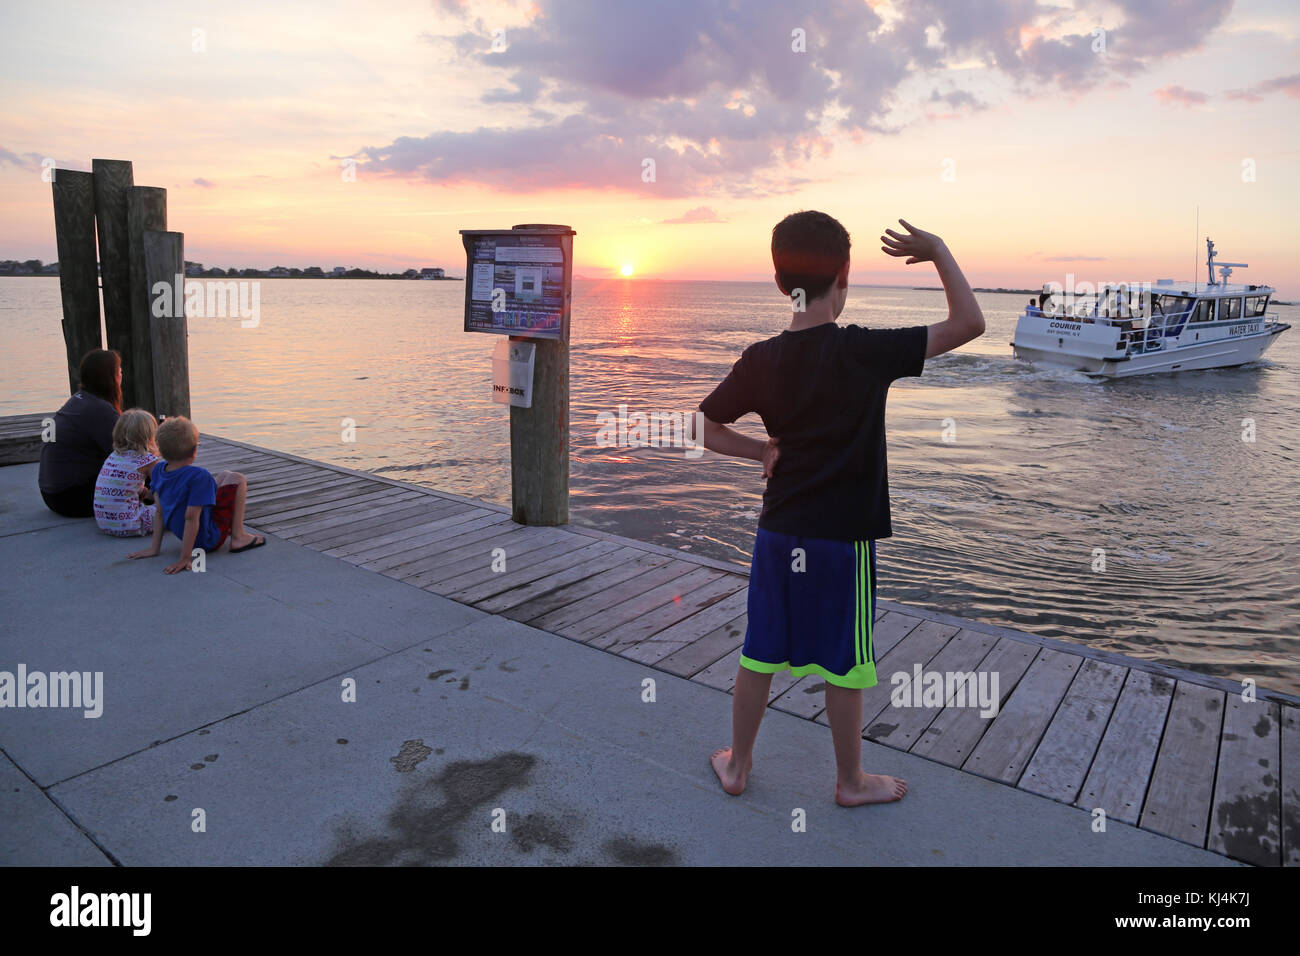 Boy waving to water taxi, Fair Harbor, Fire Island, NY, USA Stock Photo